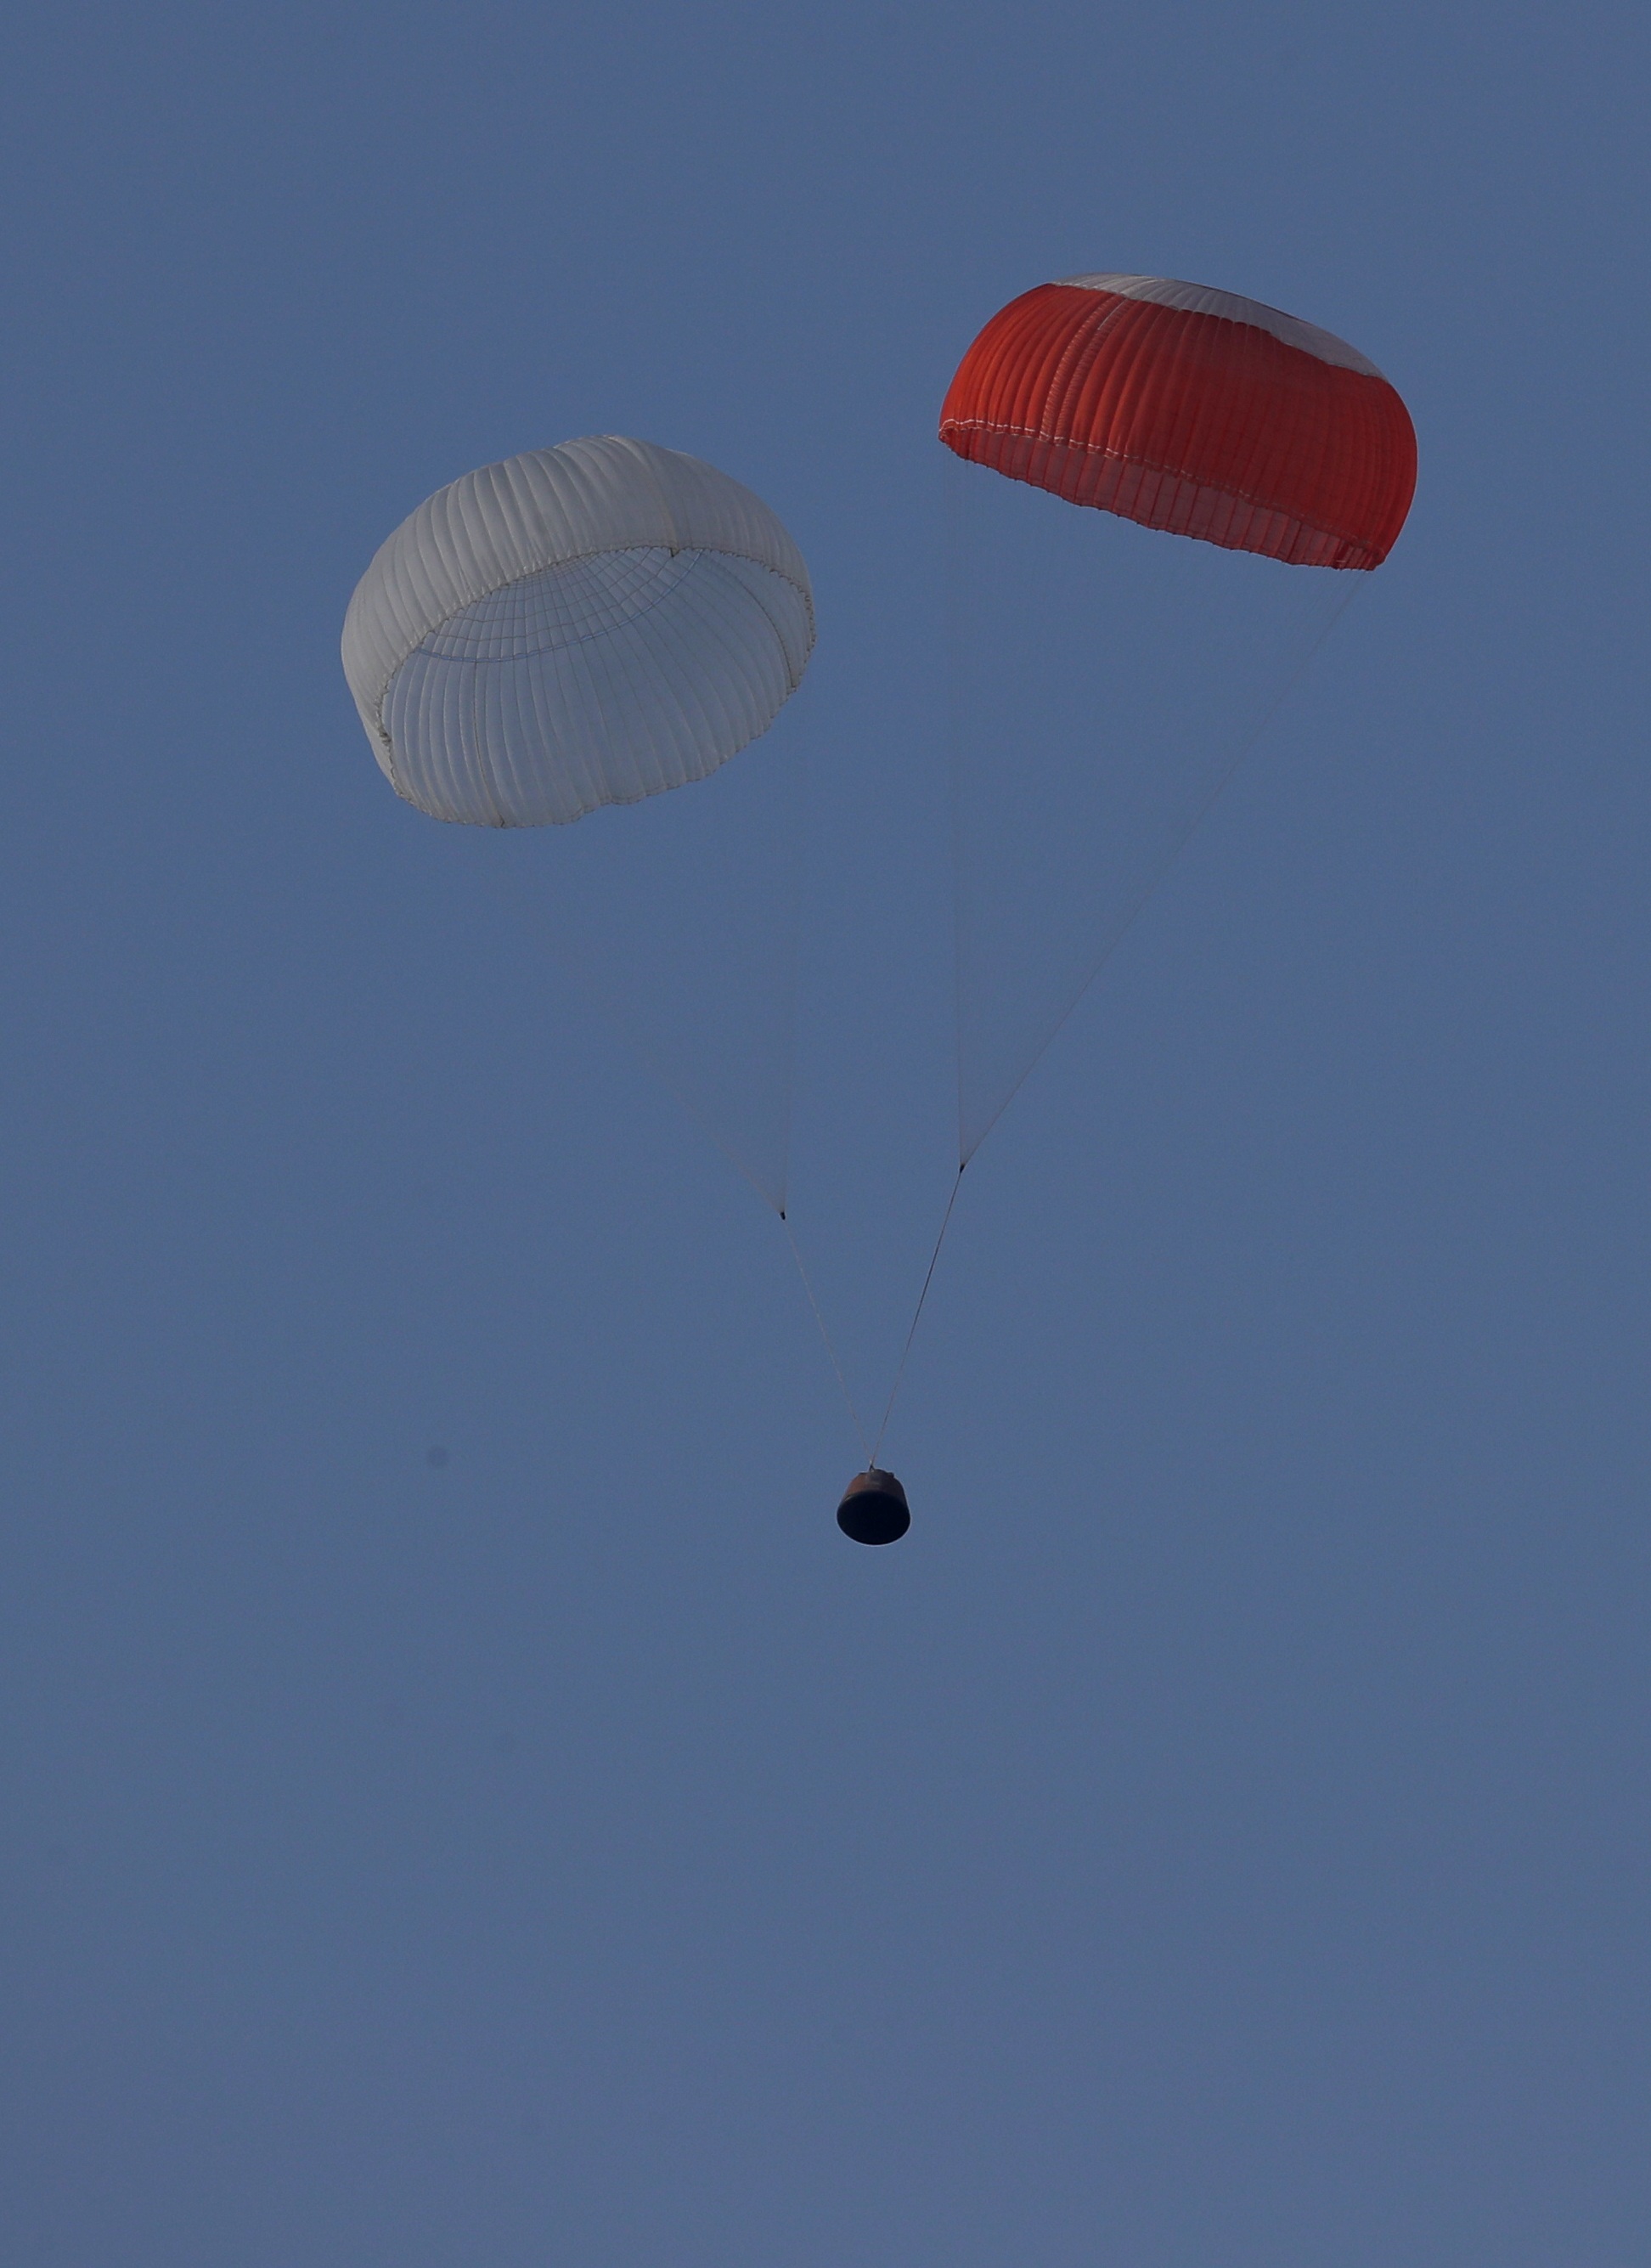 crew_module_landing_2.jpg